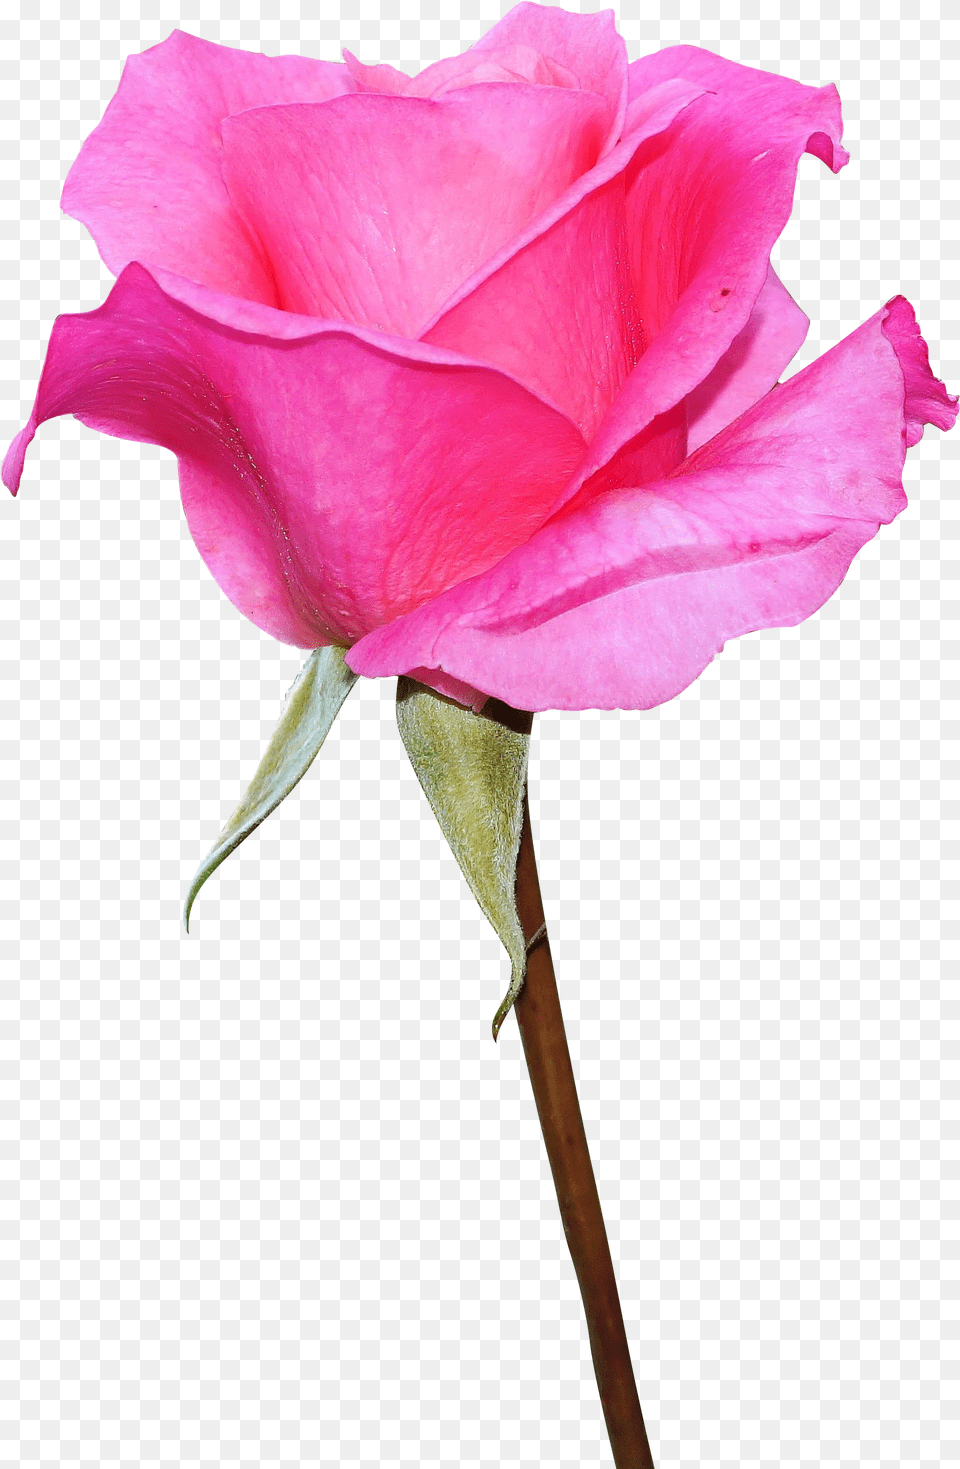 Download Rose, Flower, Plant, Petal Free Png